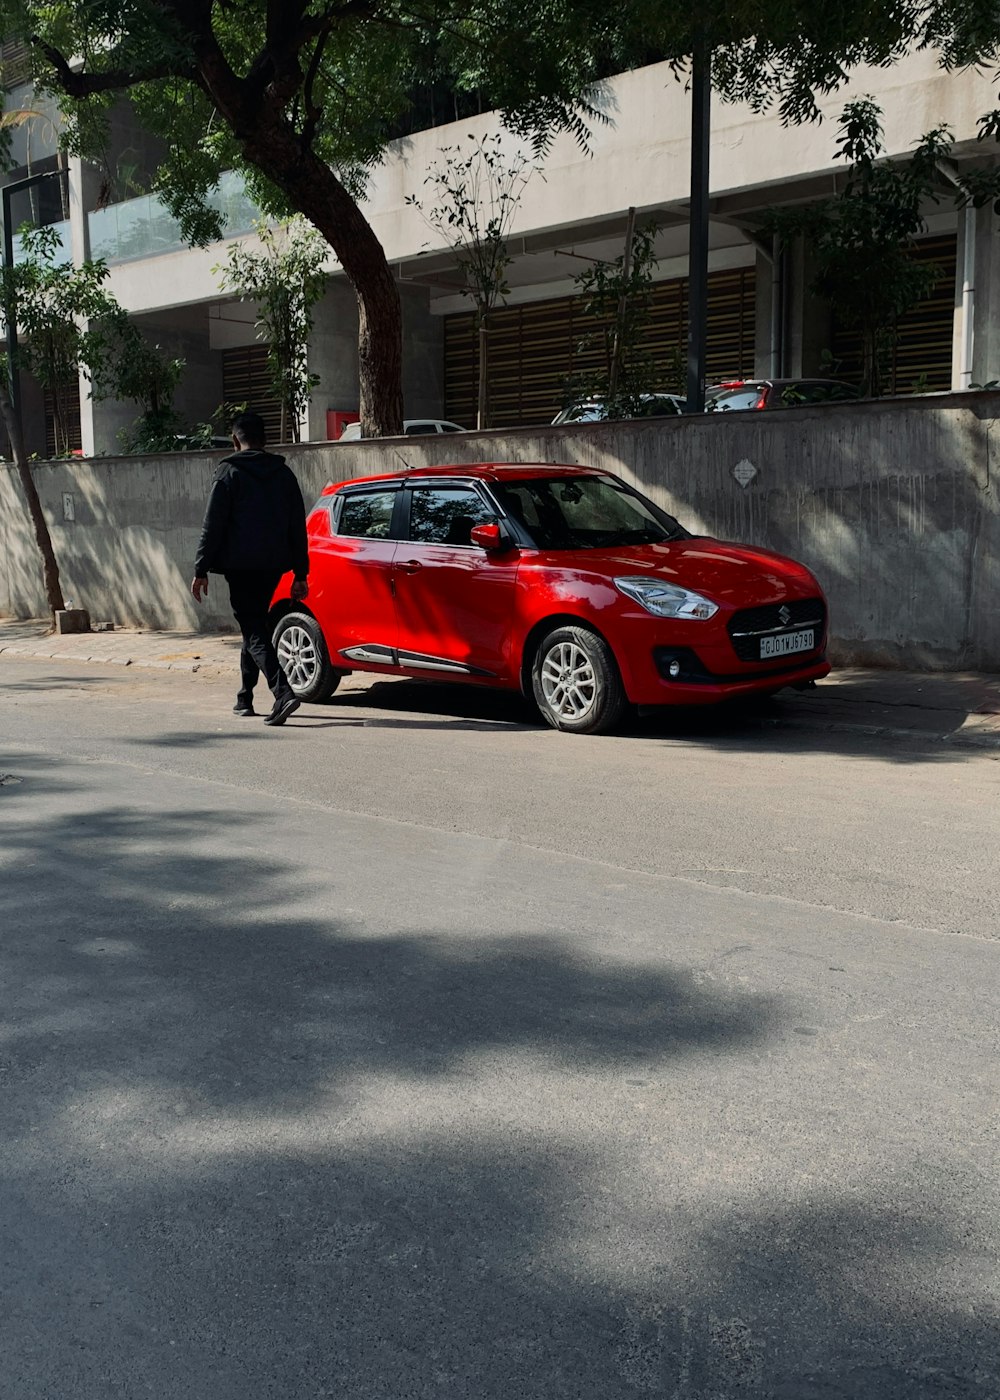 길가에 주차된 빨간 차